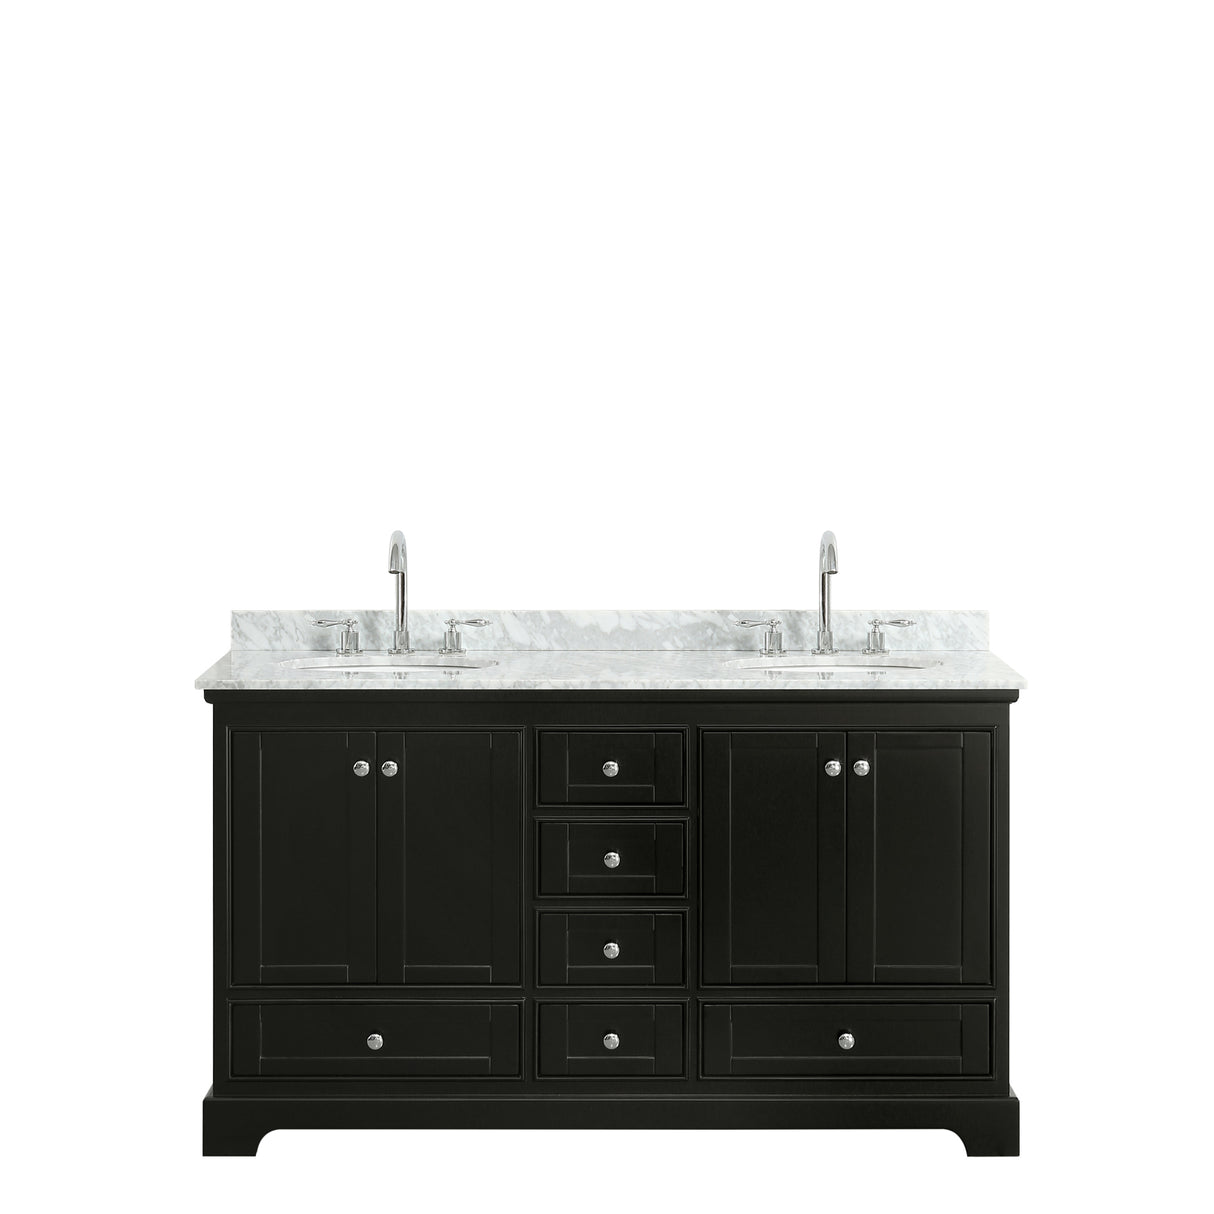 Deborah 60 Inch Double Bathroom Vanity in Dark Espresso White Carrara Marble Countertop Undermount Oval Sinks and No Mirrors